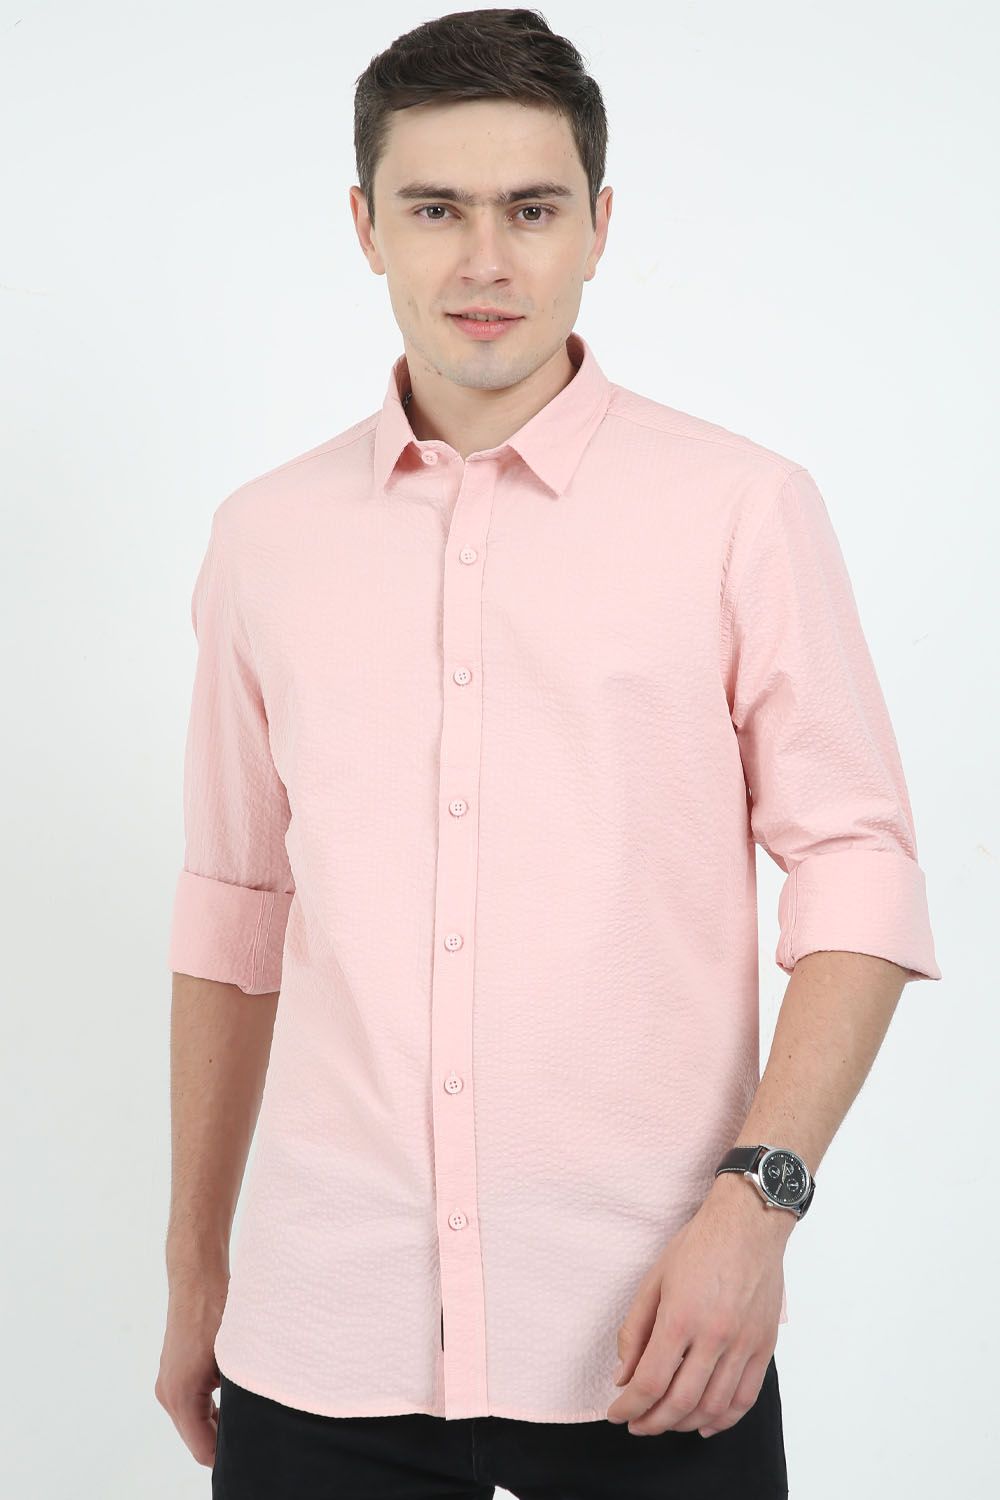 Krimty Light Pink Double Pocket Seersucker Shirt KMTSH01246